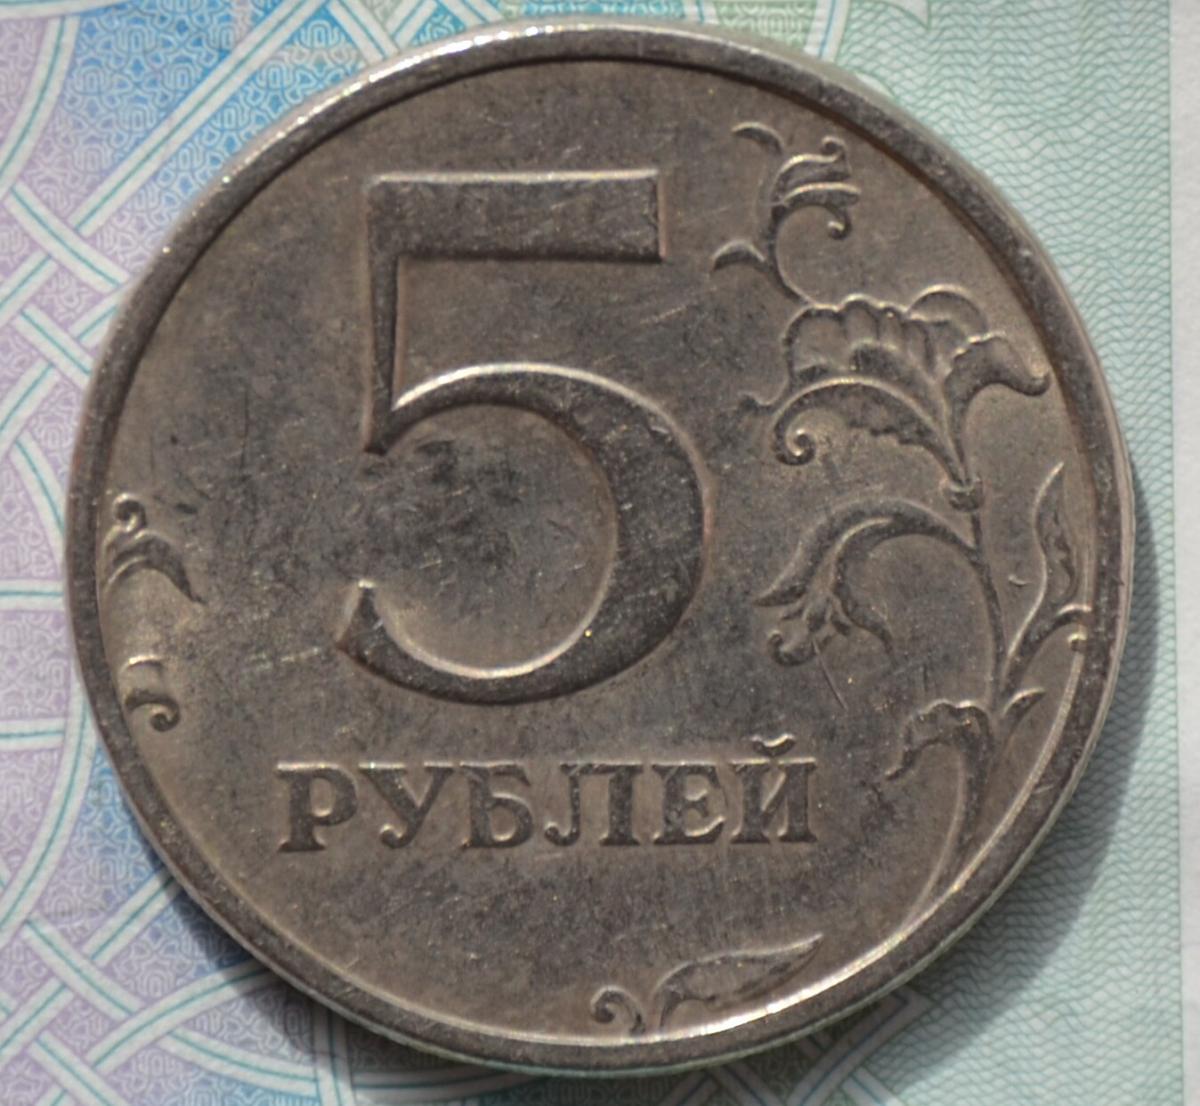 5 рублей заказать. Редкая монета 5 рублей 1998 года. Редкая Монетка пять рублей 1998 года. 5 Рублей 1998 СПМД редкая. Редкие монет 1997.